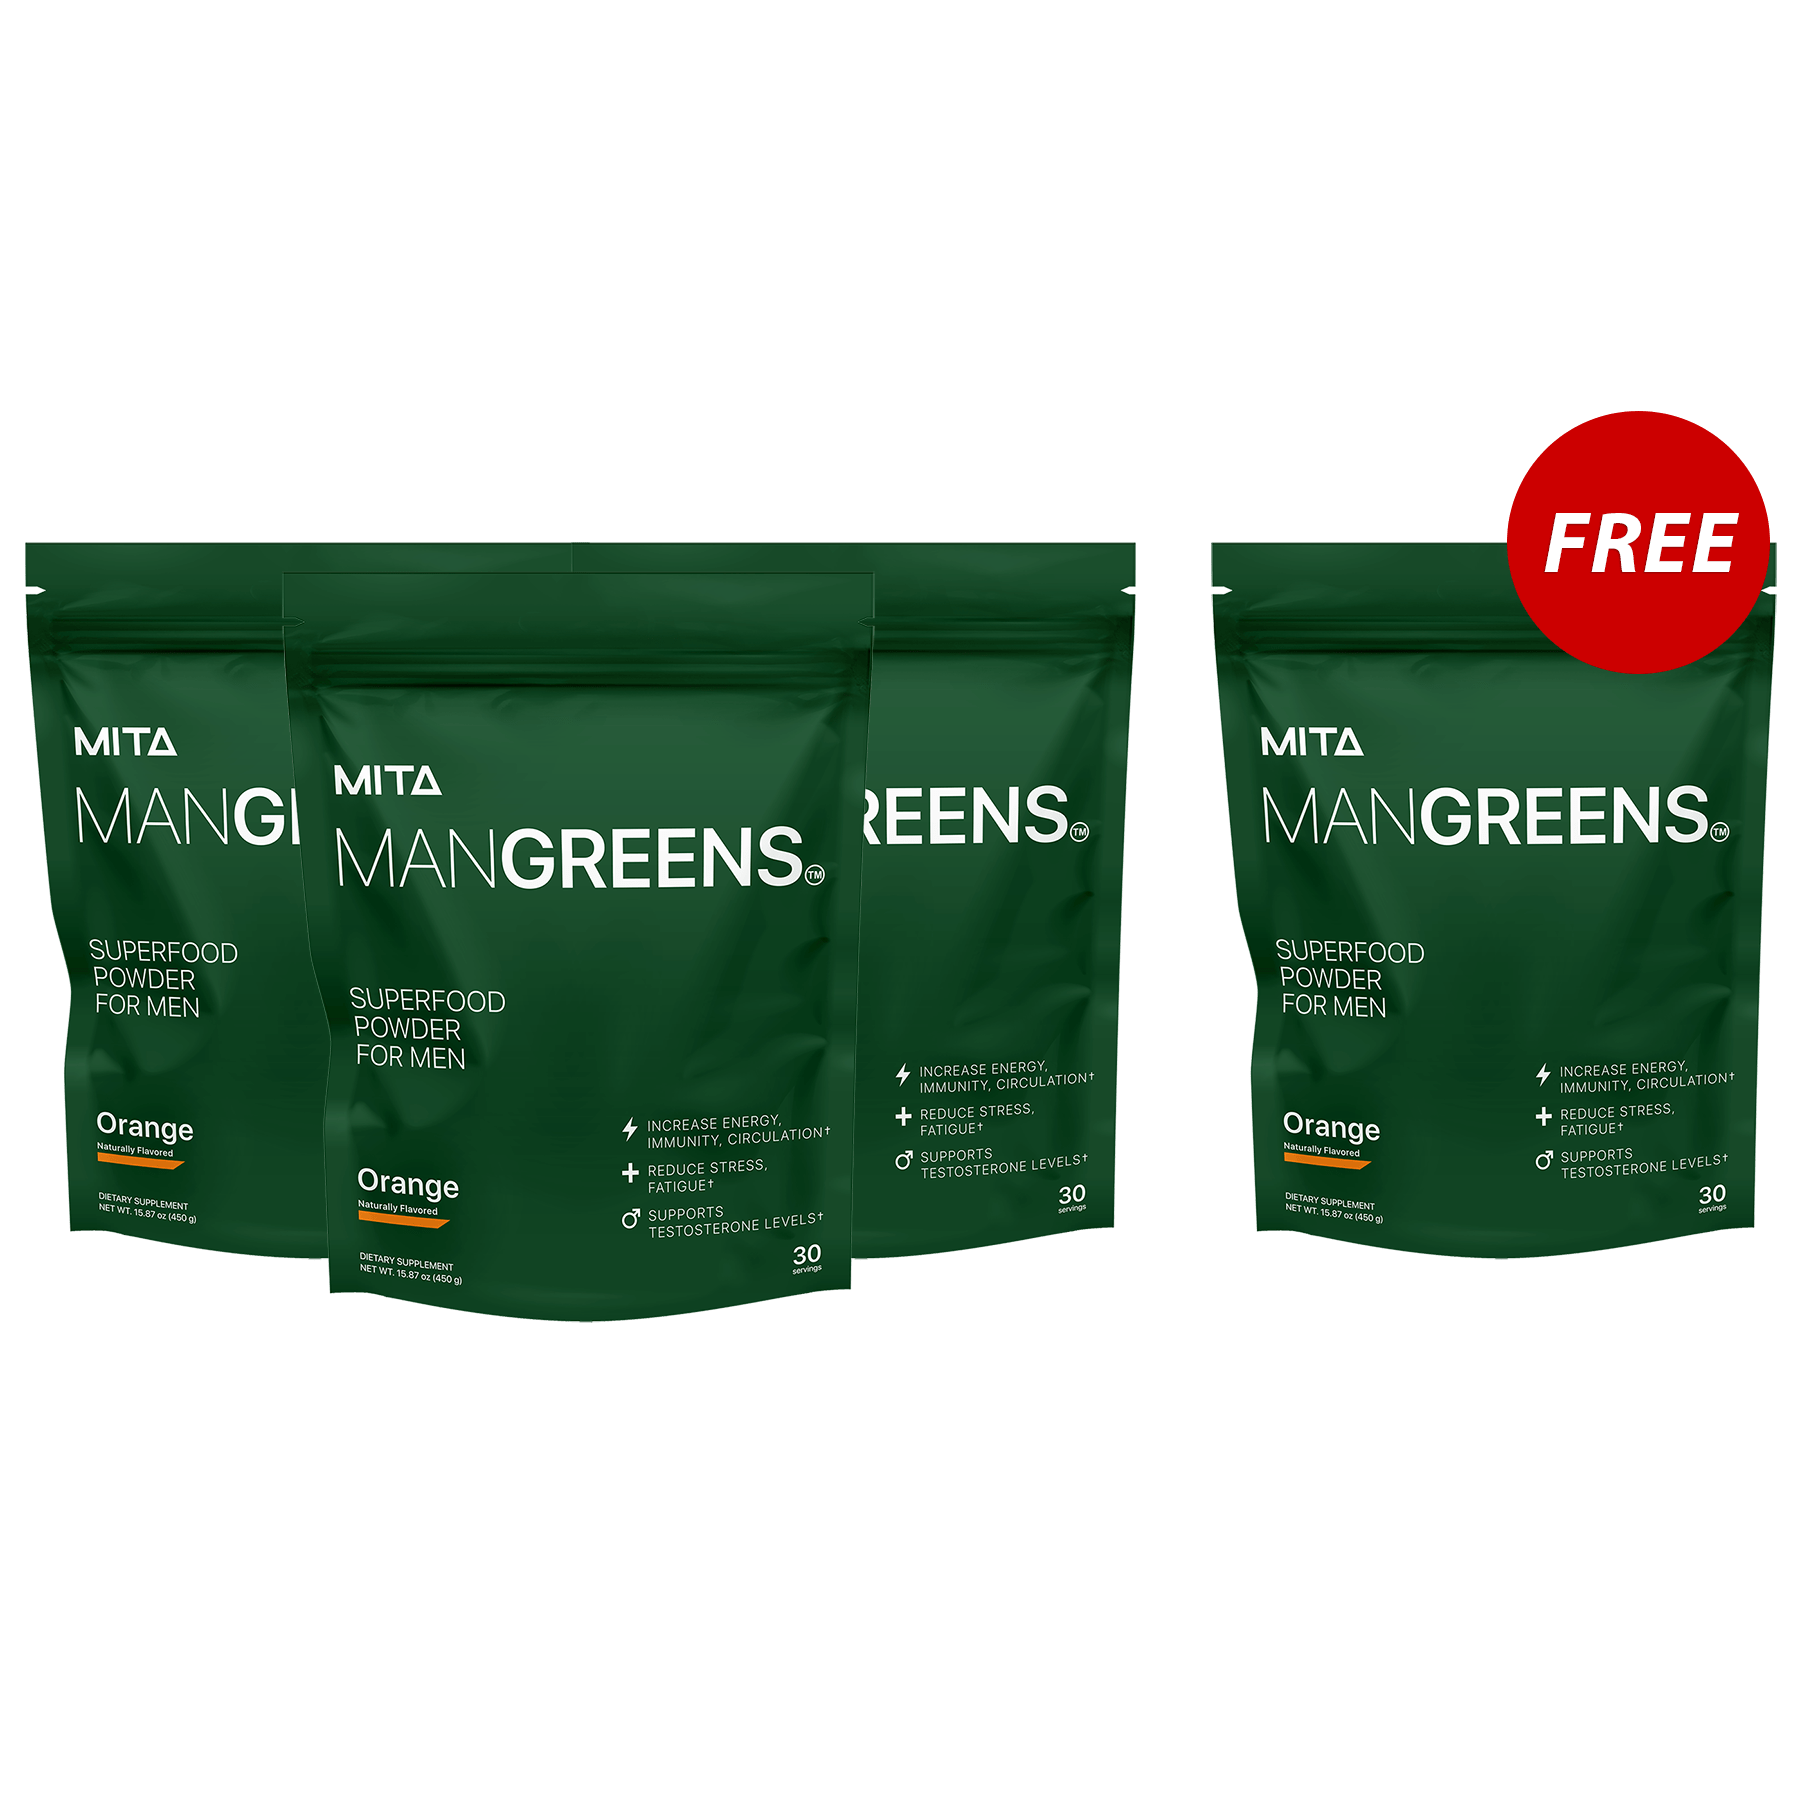 Man Greens - Buy 3, Get 1 FREE